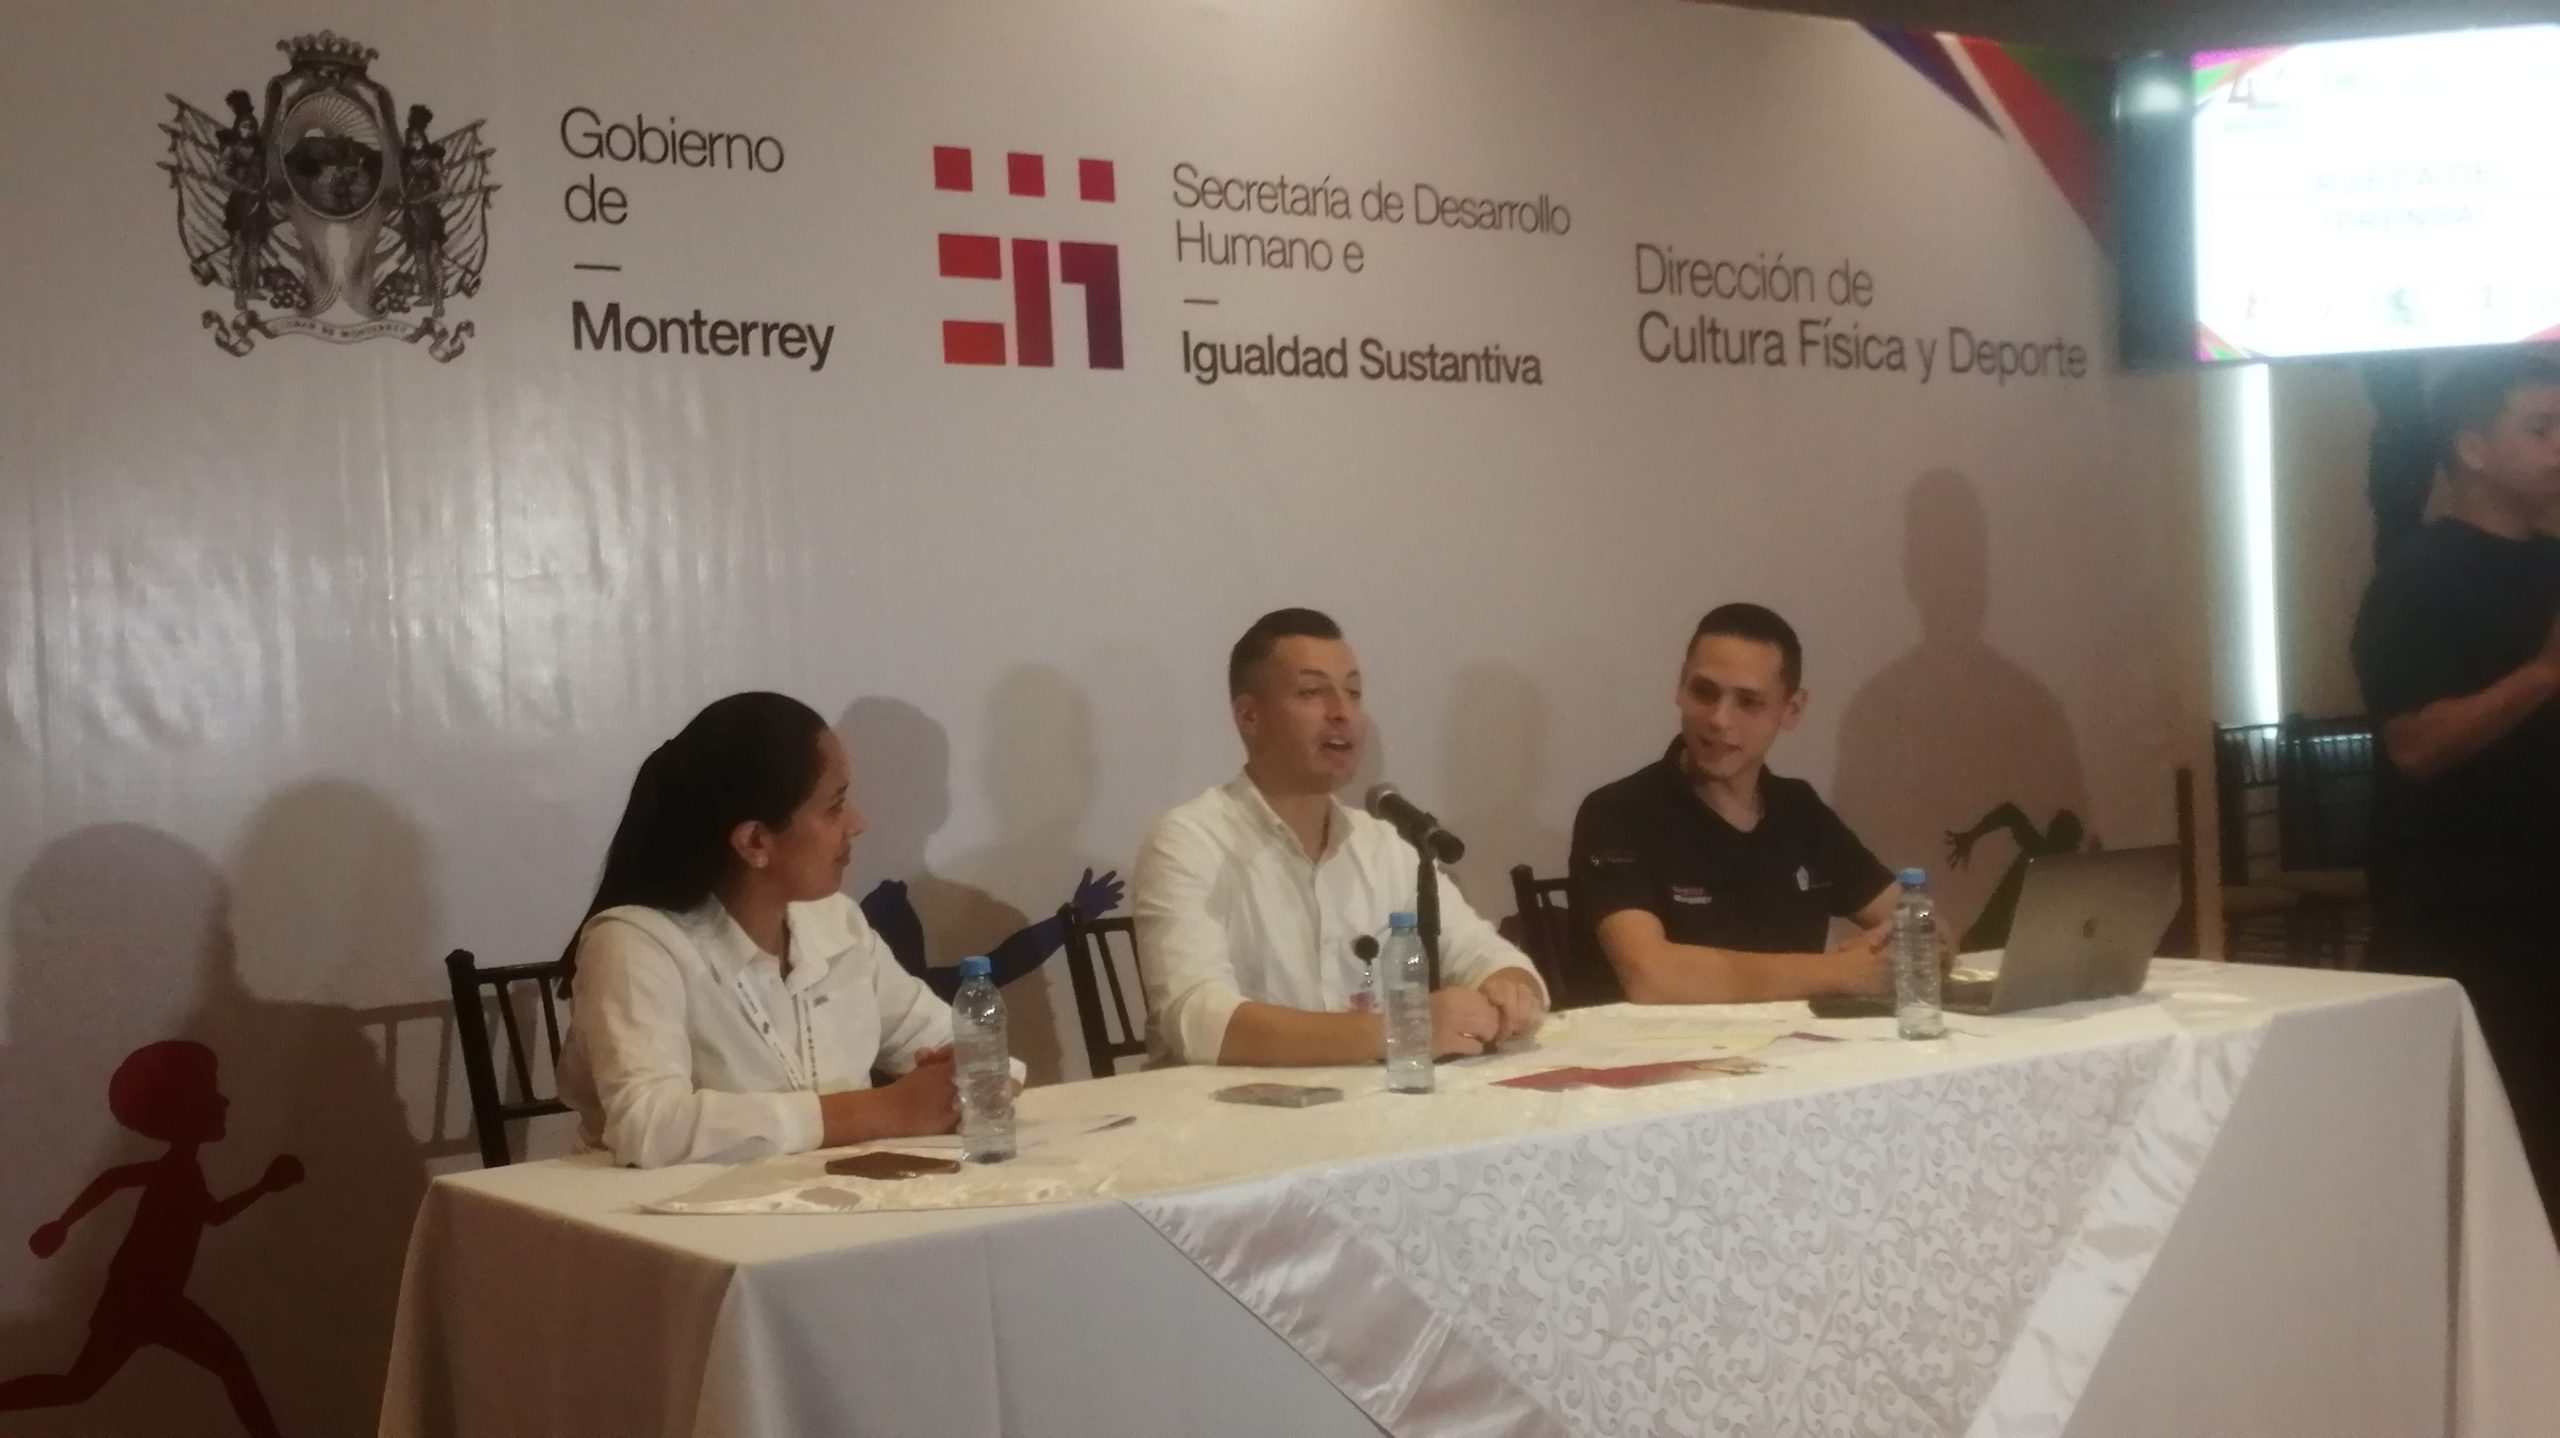 Pausa Gobierno de Monterrey contrato asignado a funcionario estatal